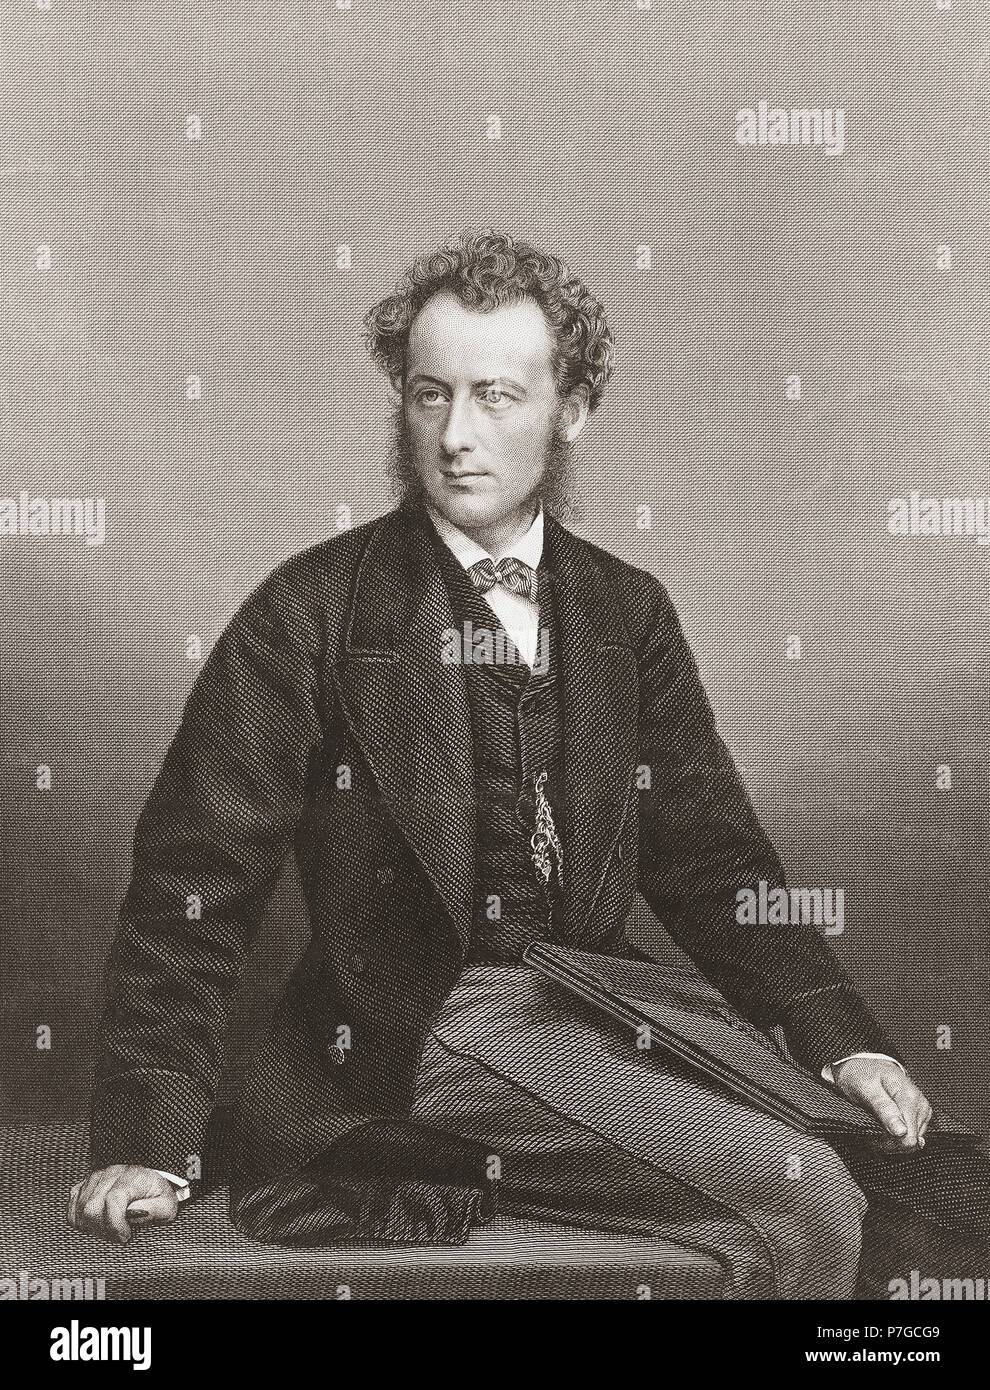 Sir John Everett Millais, 1st Baronet, 1829-1896. Englischer Maler und Illustrator. Er war einer der Gründer der Pre-Raphaelite Brotherhood. Stockfoto